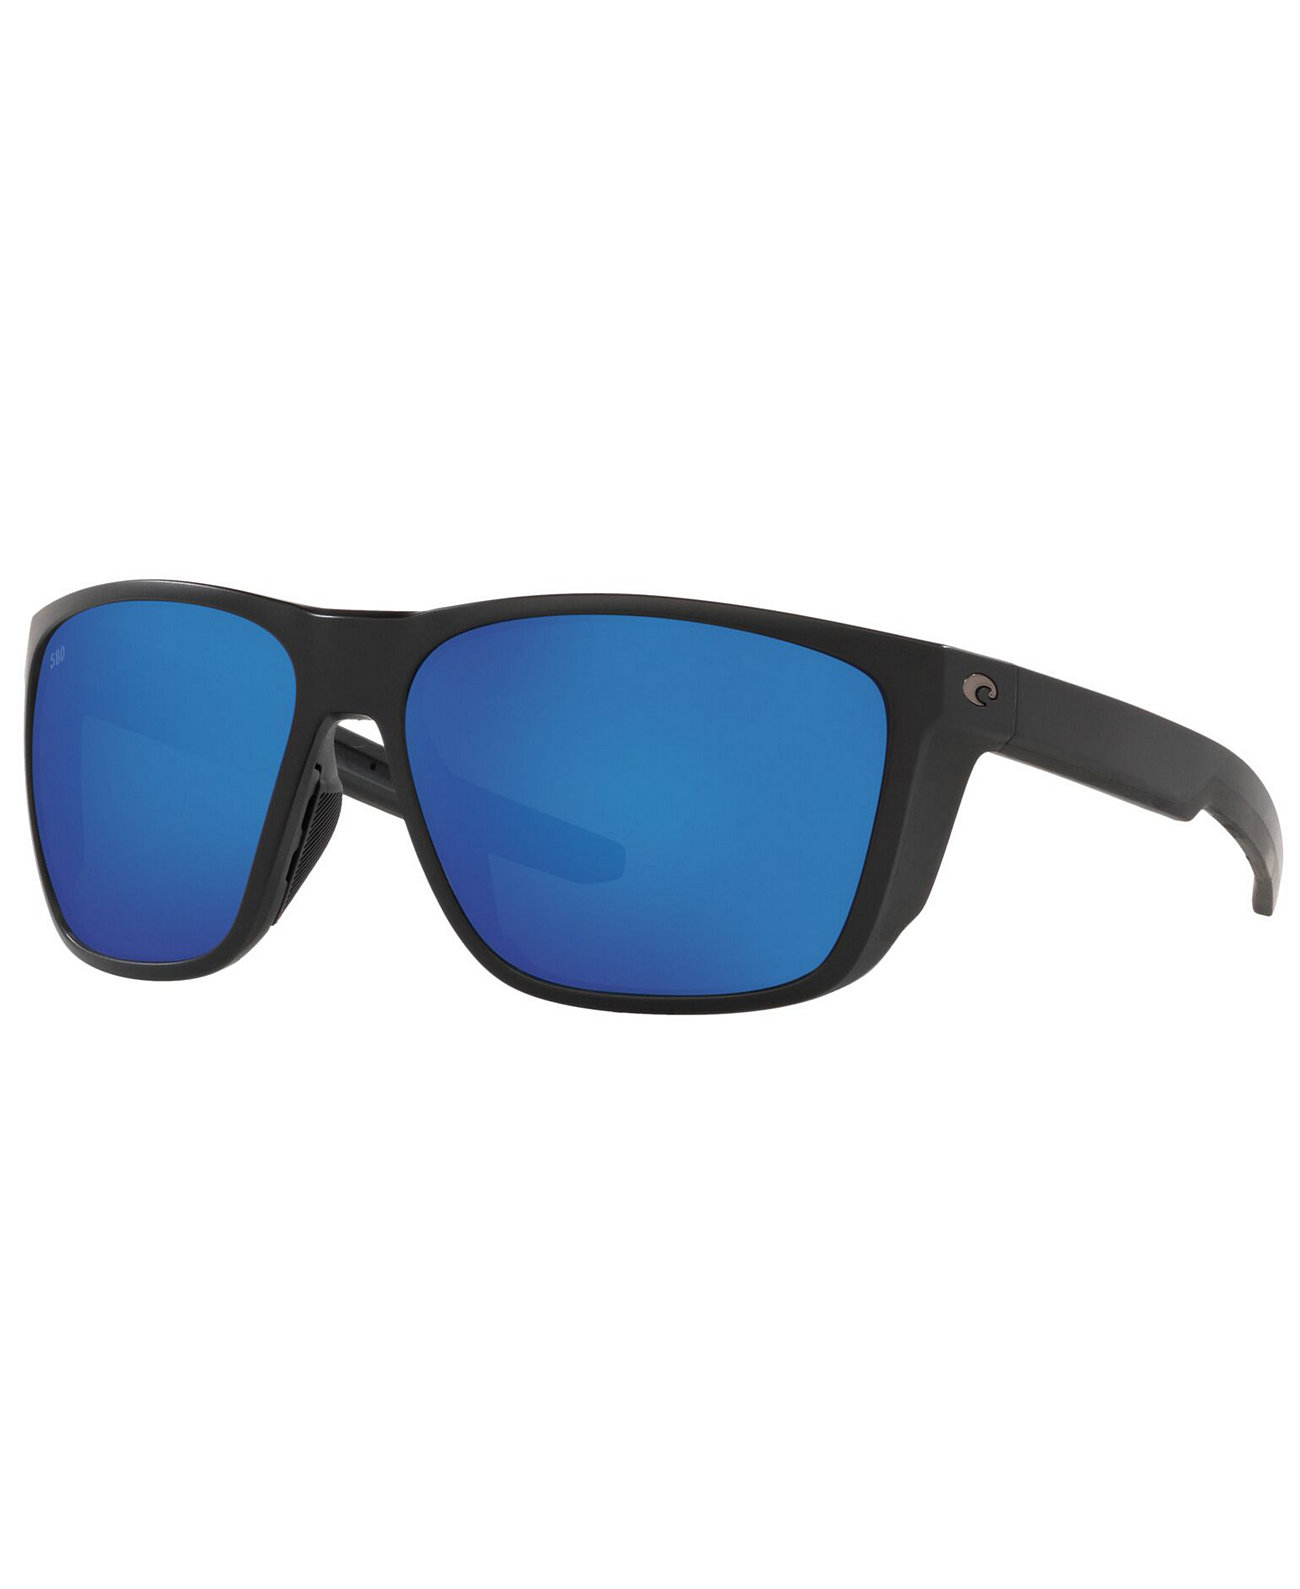 Поляризованные солнцезащитные очки FERG XL, 6S9012 62 COSTA DEL MAR